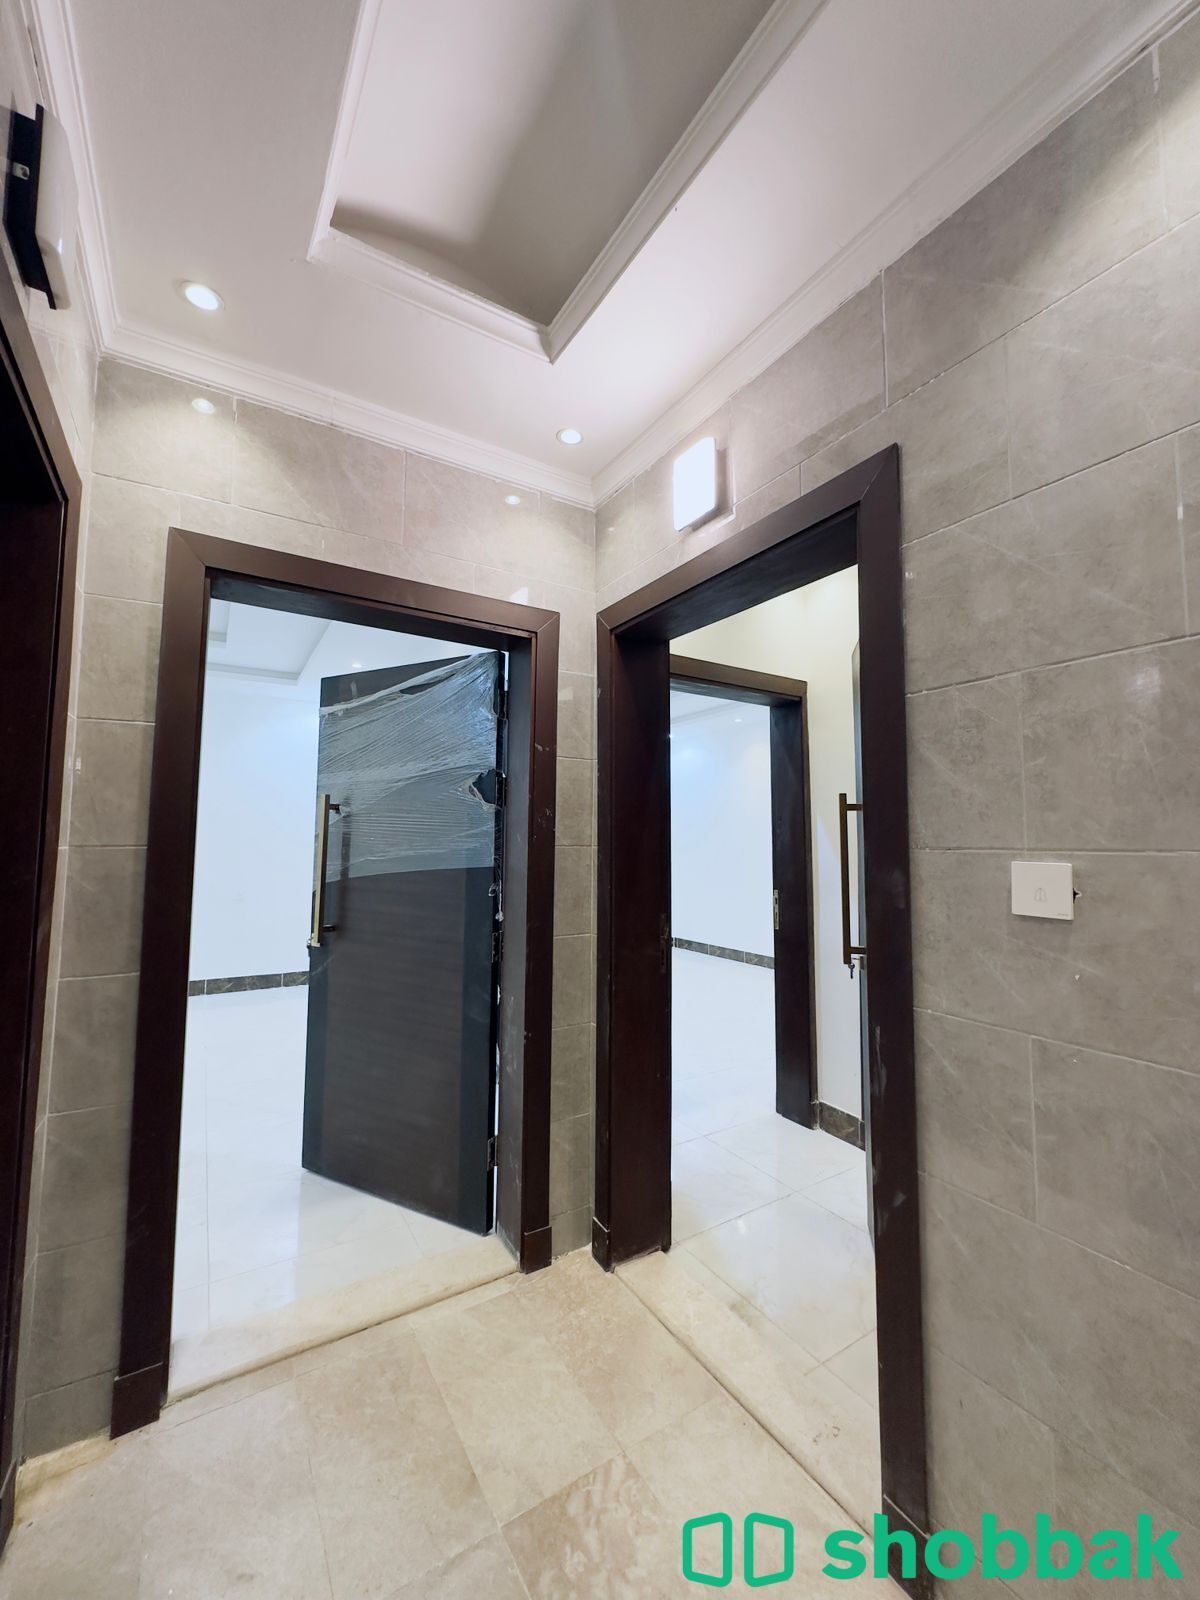 شقة 4 غرف للبيع جديدة جاهزة للسكن تقبل البنك أفراغ فوري من المالك مباشرة  Shobbak Saudi Arabia